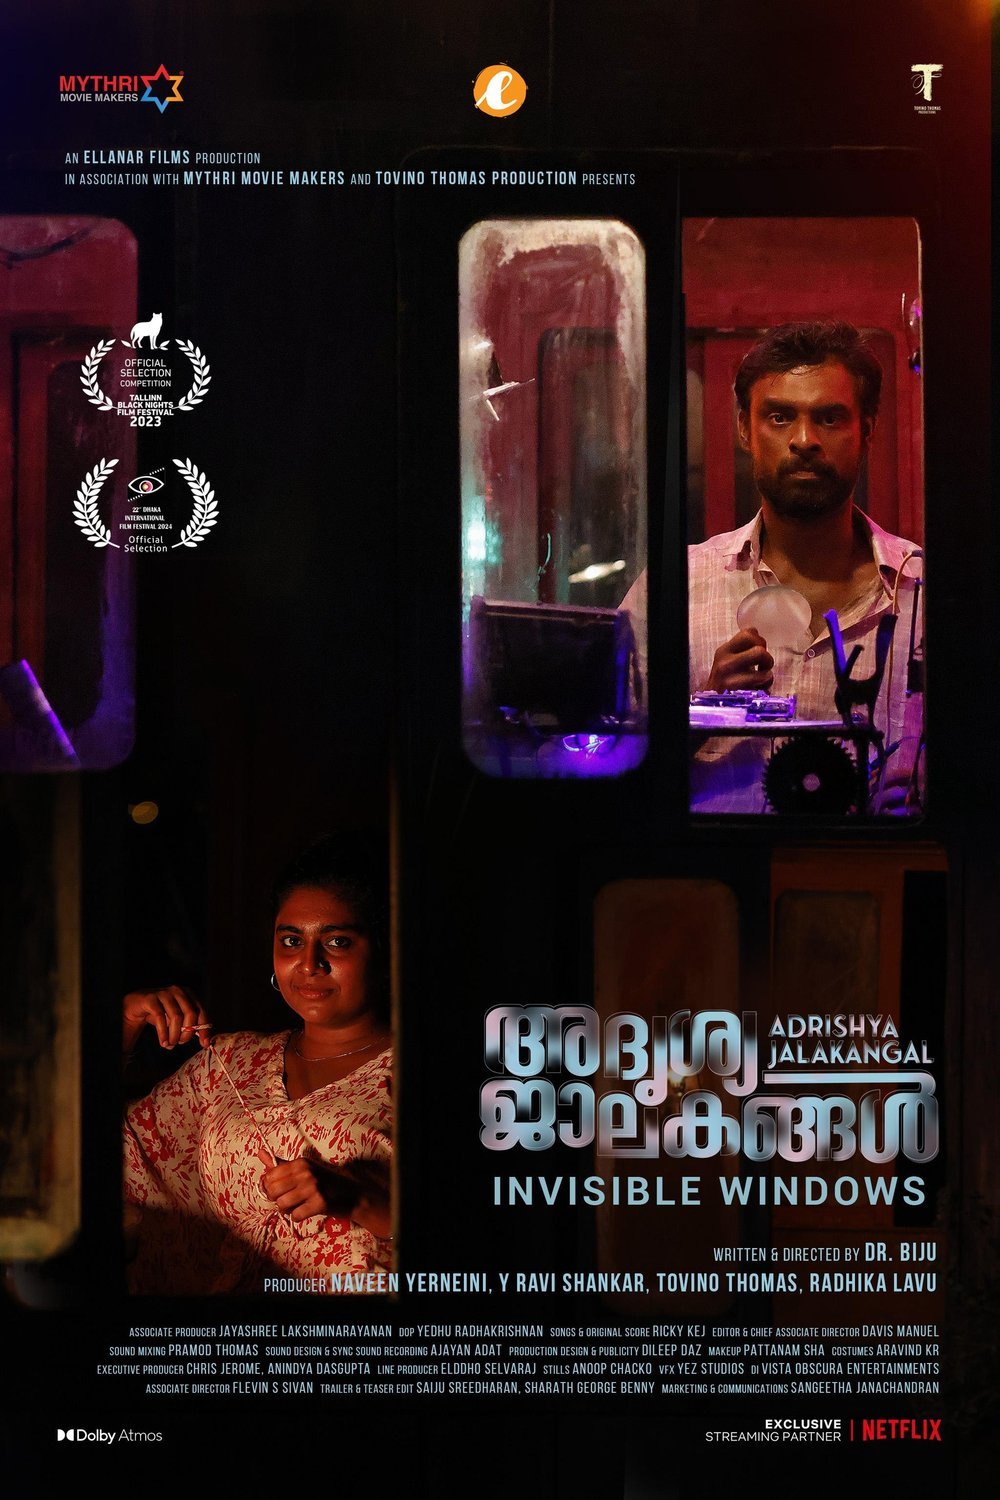 Malayalam poster of the movie Adrishya Jalakangal